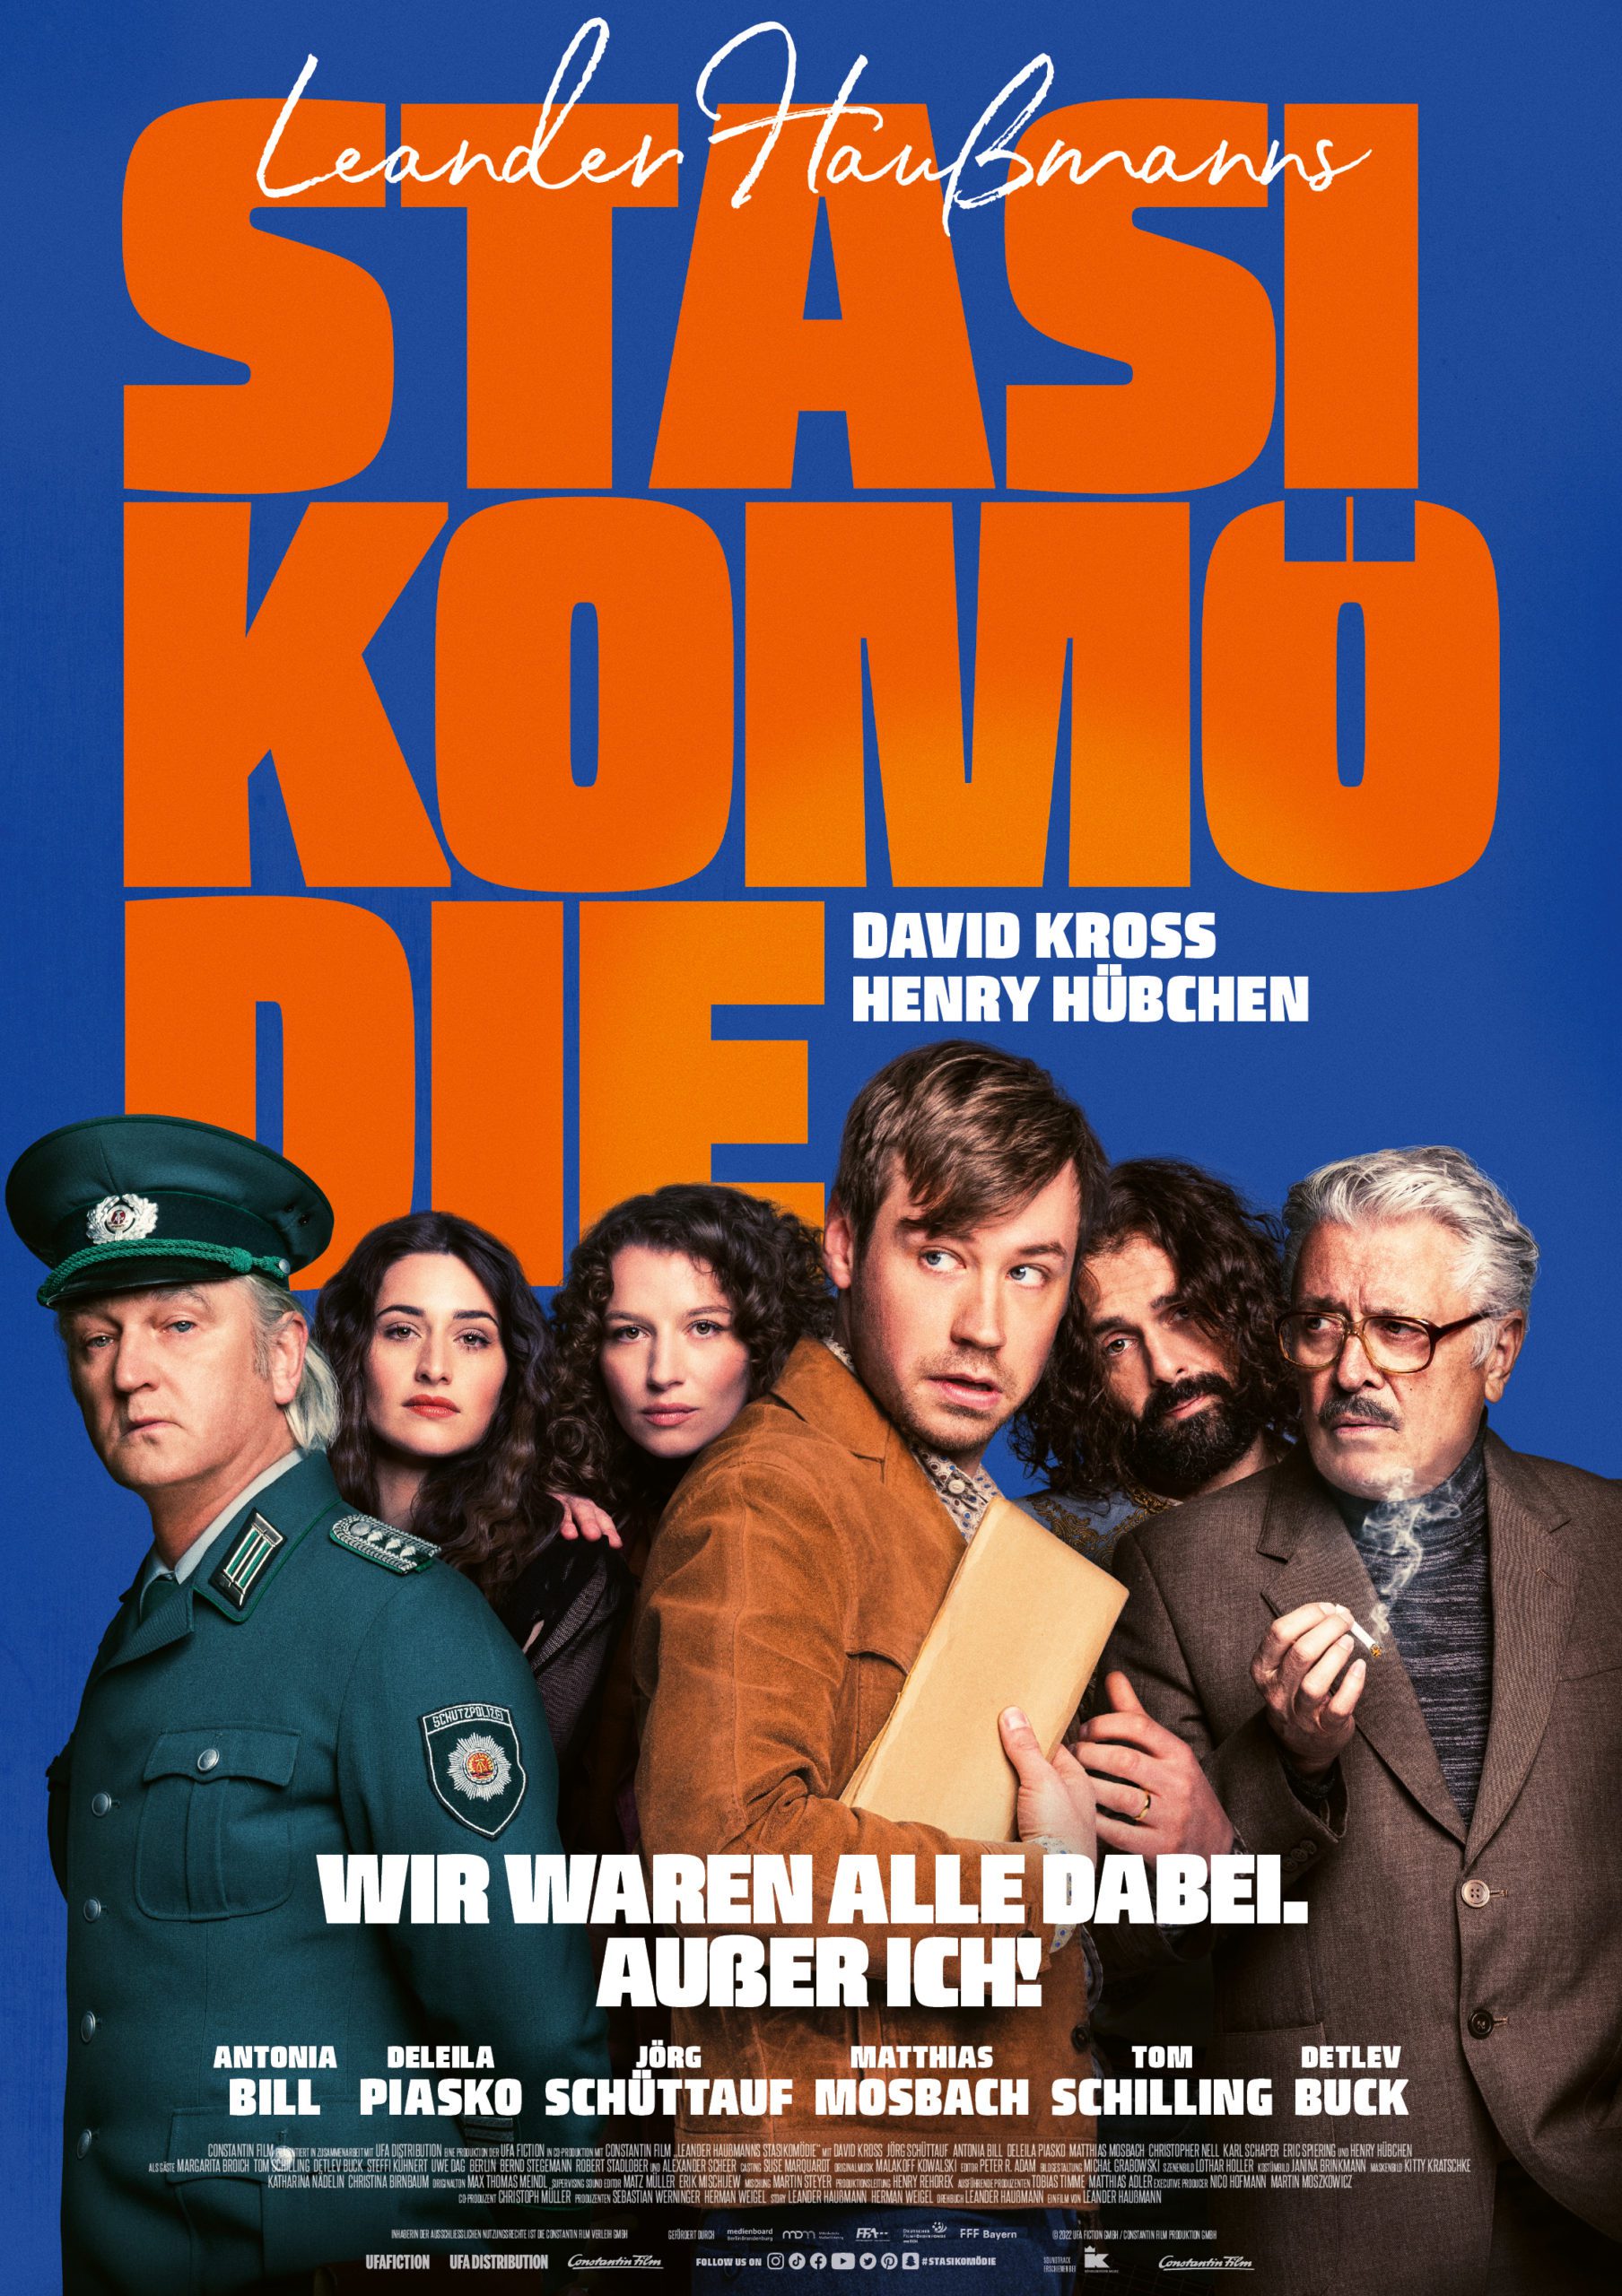 "Stasikomödie" - Teaser zur neuen Komödie von Leander Haußmann